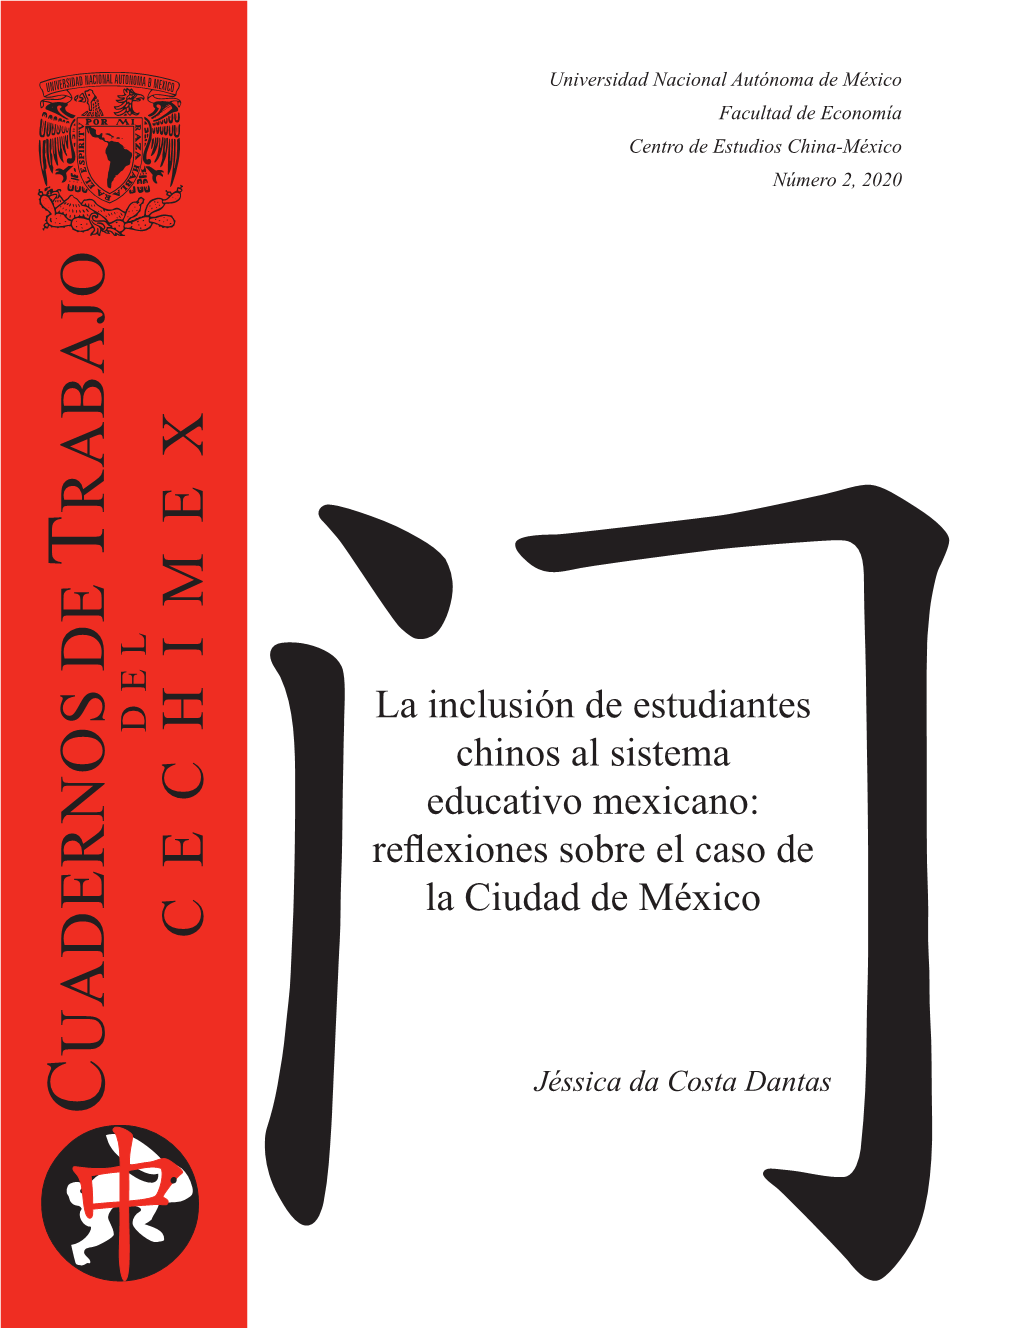 La Inclusión De Estudiantes Chinos Al Sistema Educativo Mexicano: Reflexiones Sobre El Caso De La Ciudad De México